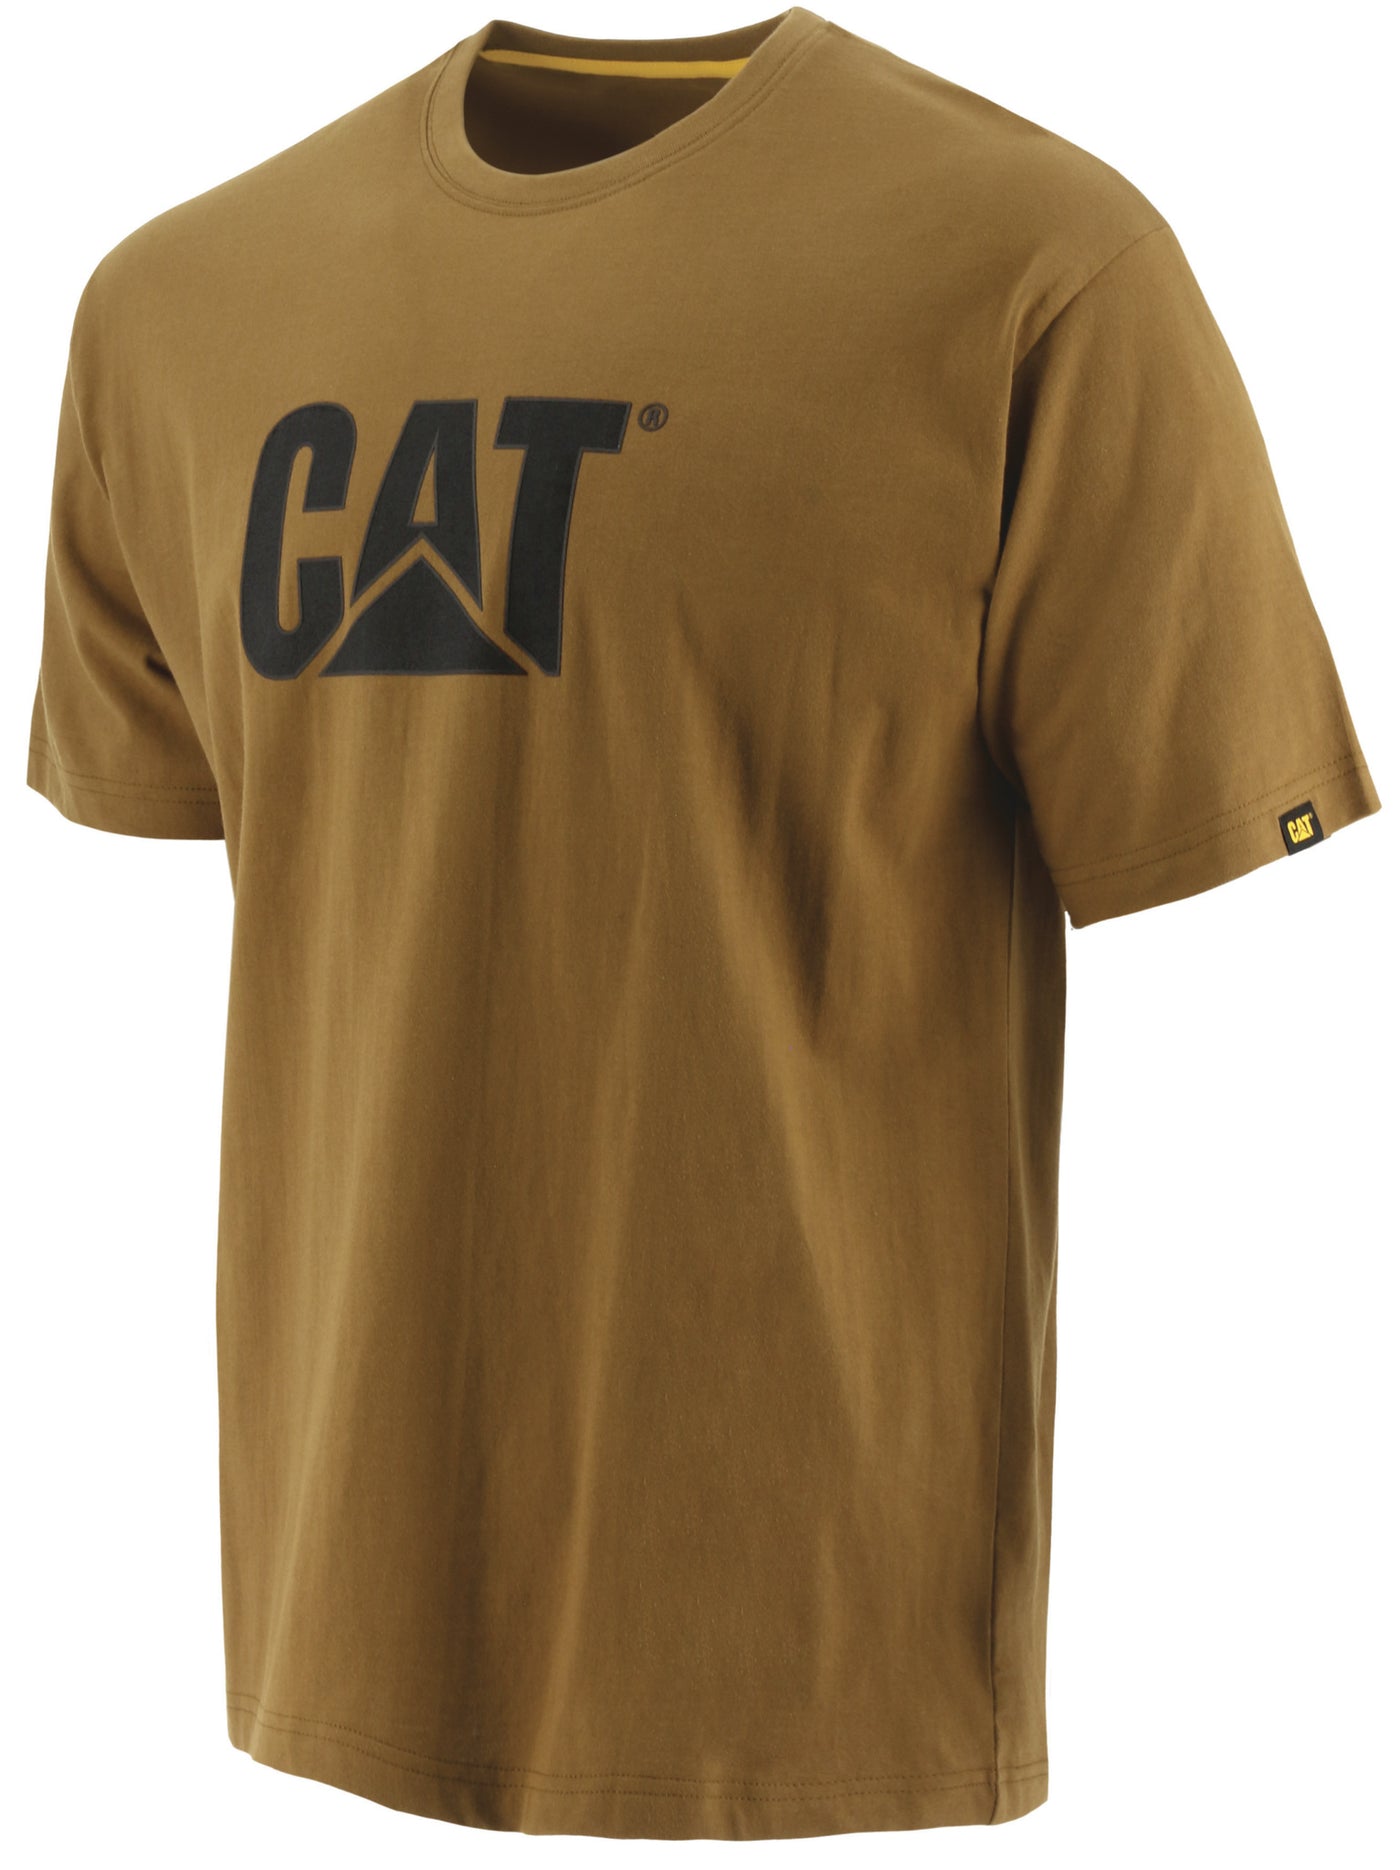 Chandail T-Shirt Trademark - Caterpillar